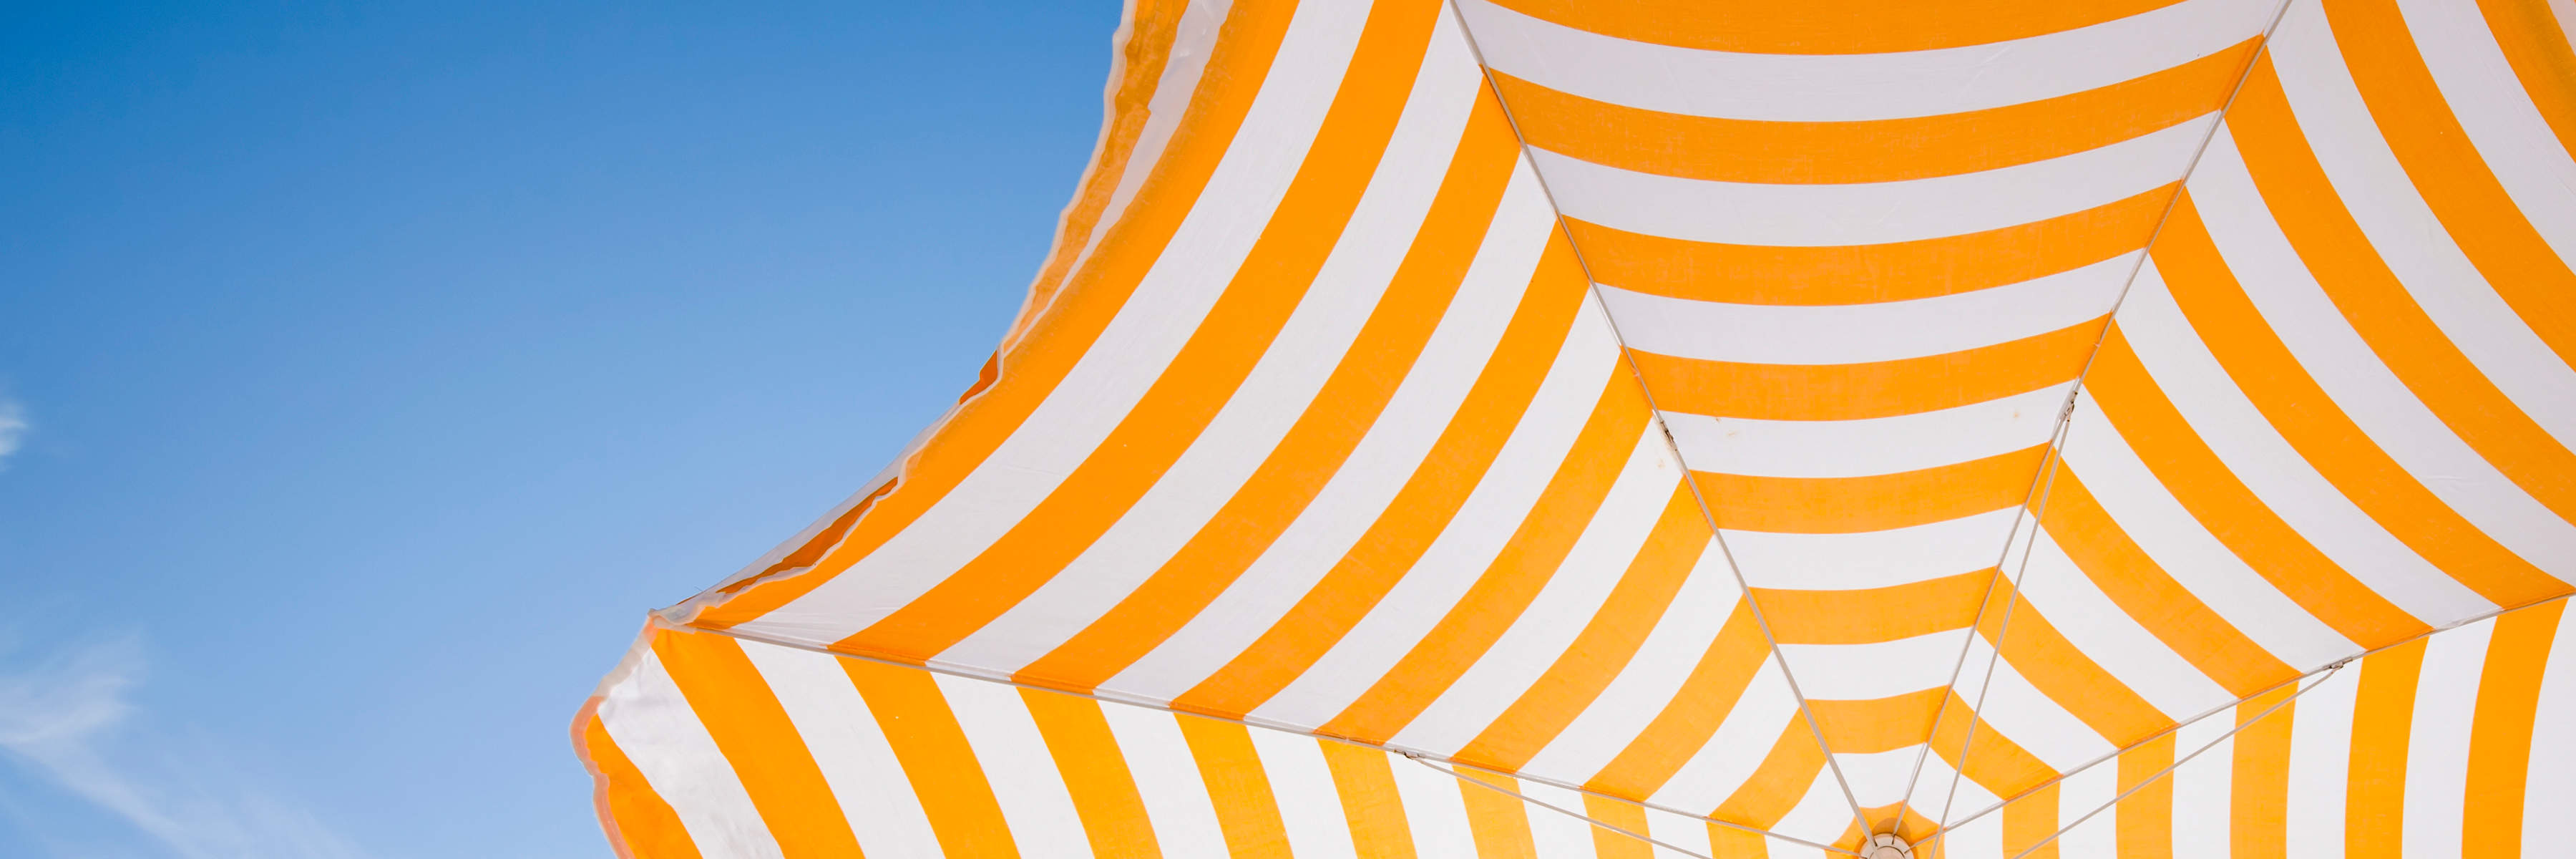 Yellow and white striped sun umbrella.